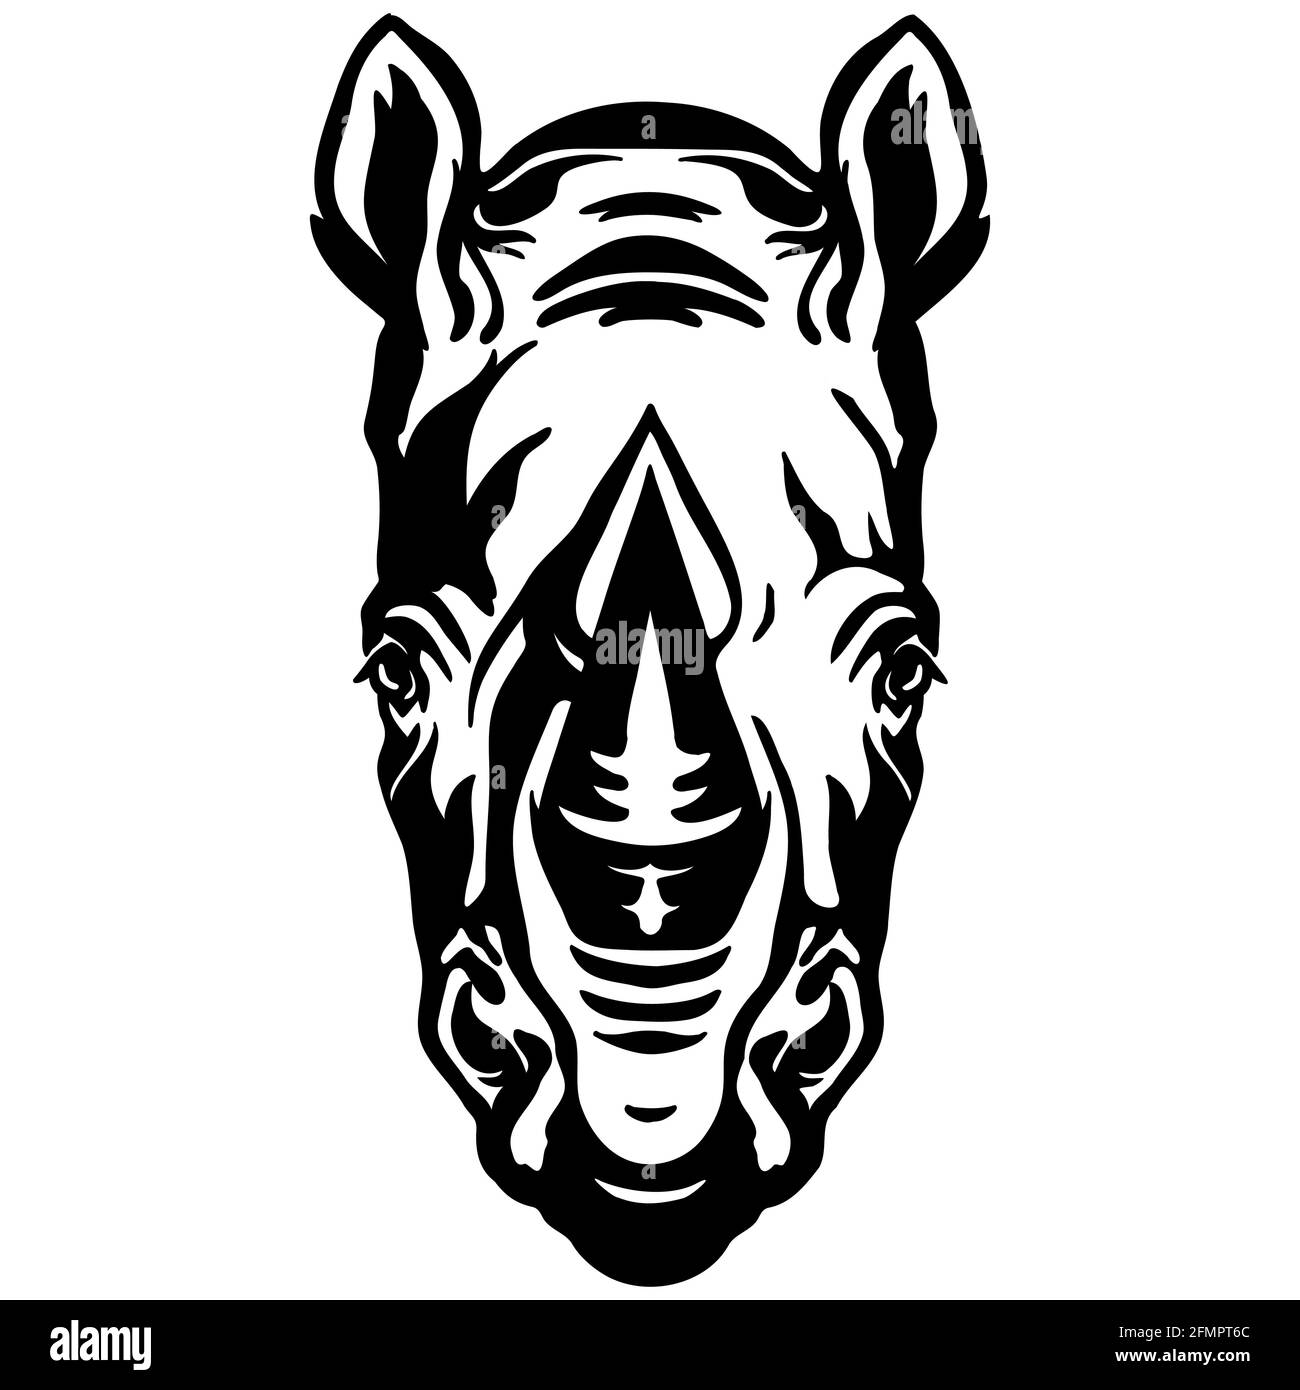 Mascotte. Tête de rhinocéros. Illustration vectorielle couleur noire vue de face d'un animal sauvage isolé sur fond blanc. Pour la décoration, l'impression, le design, le logo, sp Illustration de Vecteur